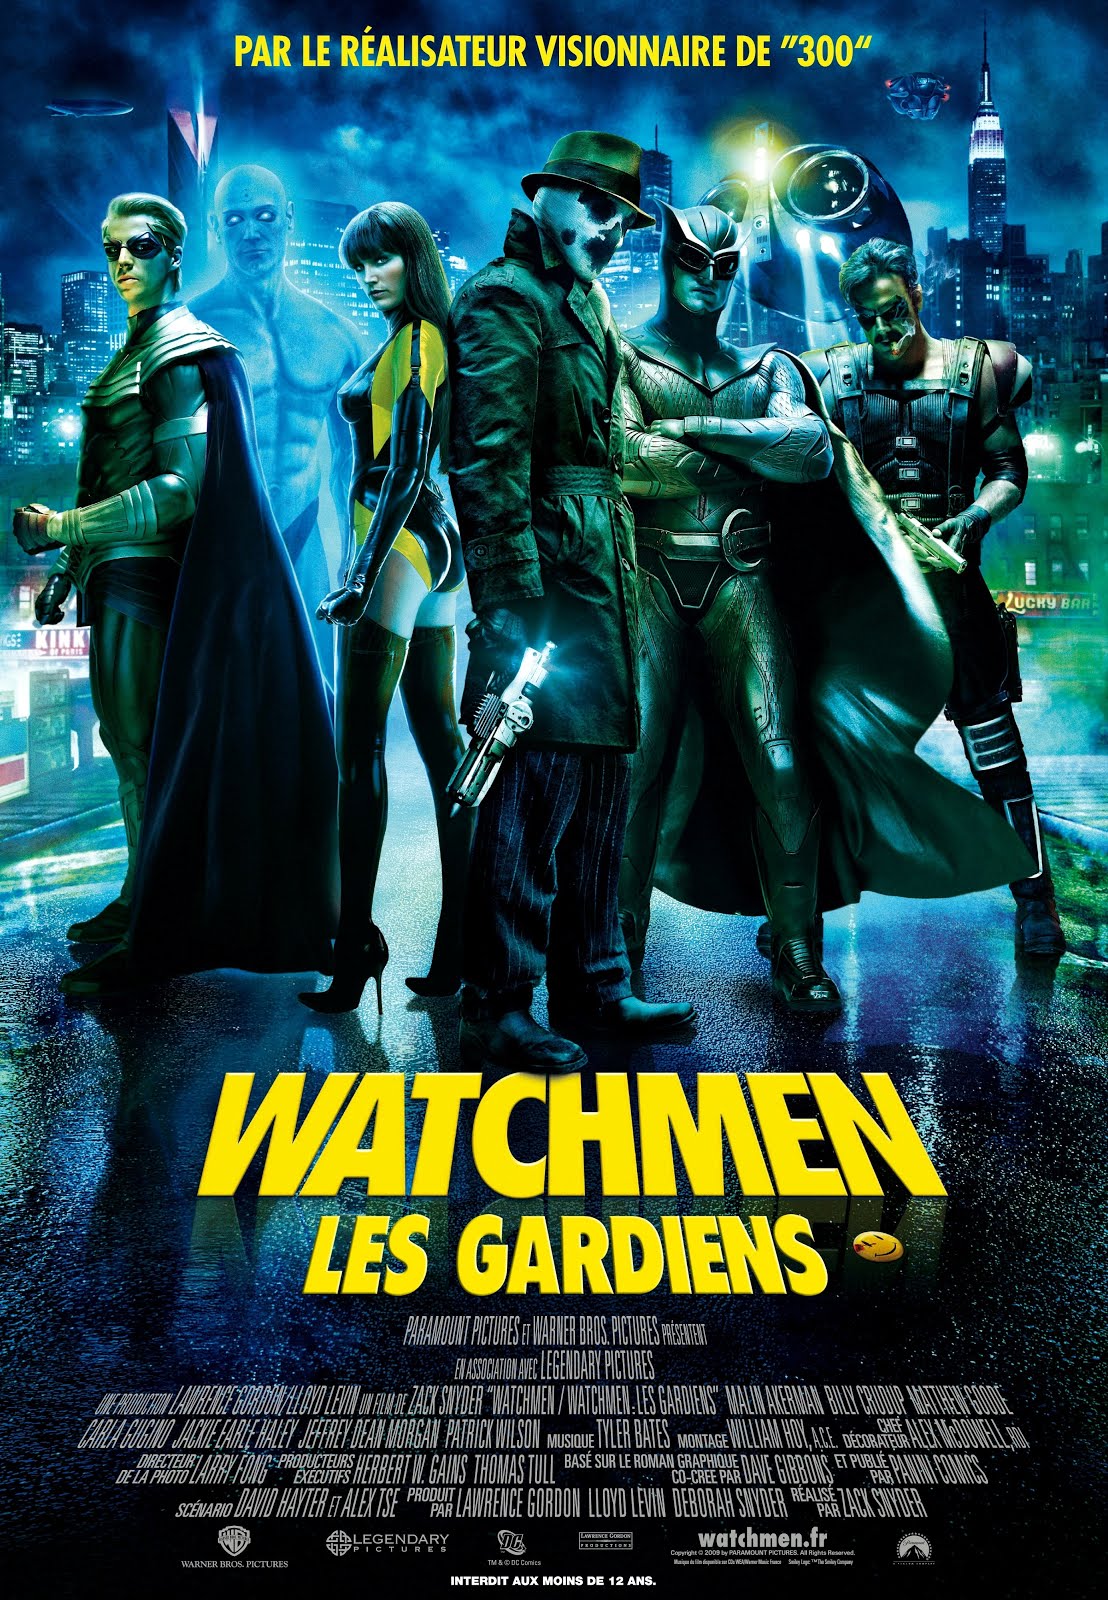 Watchmen : Les gardiens (2007) Zack Snyder - Watchmen (17.09.2007 / 19.02.2008)